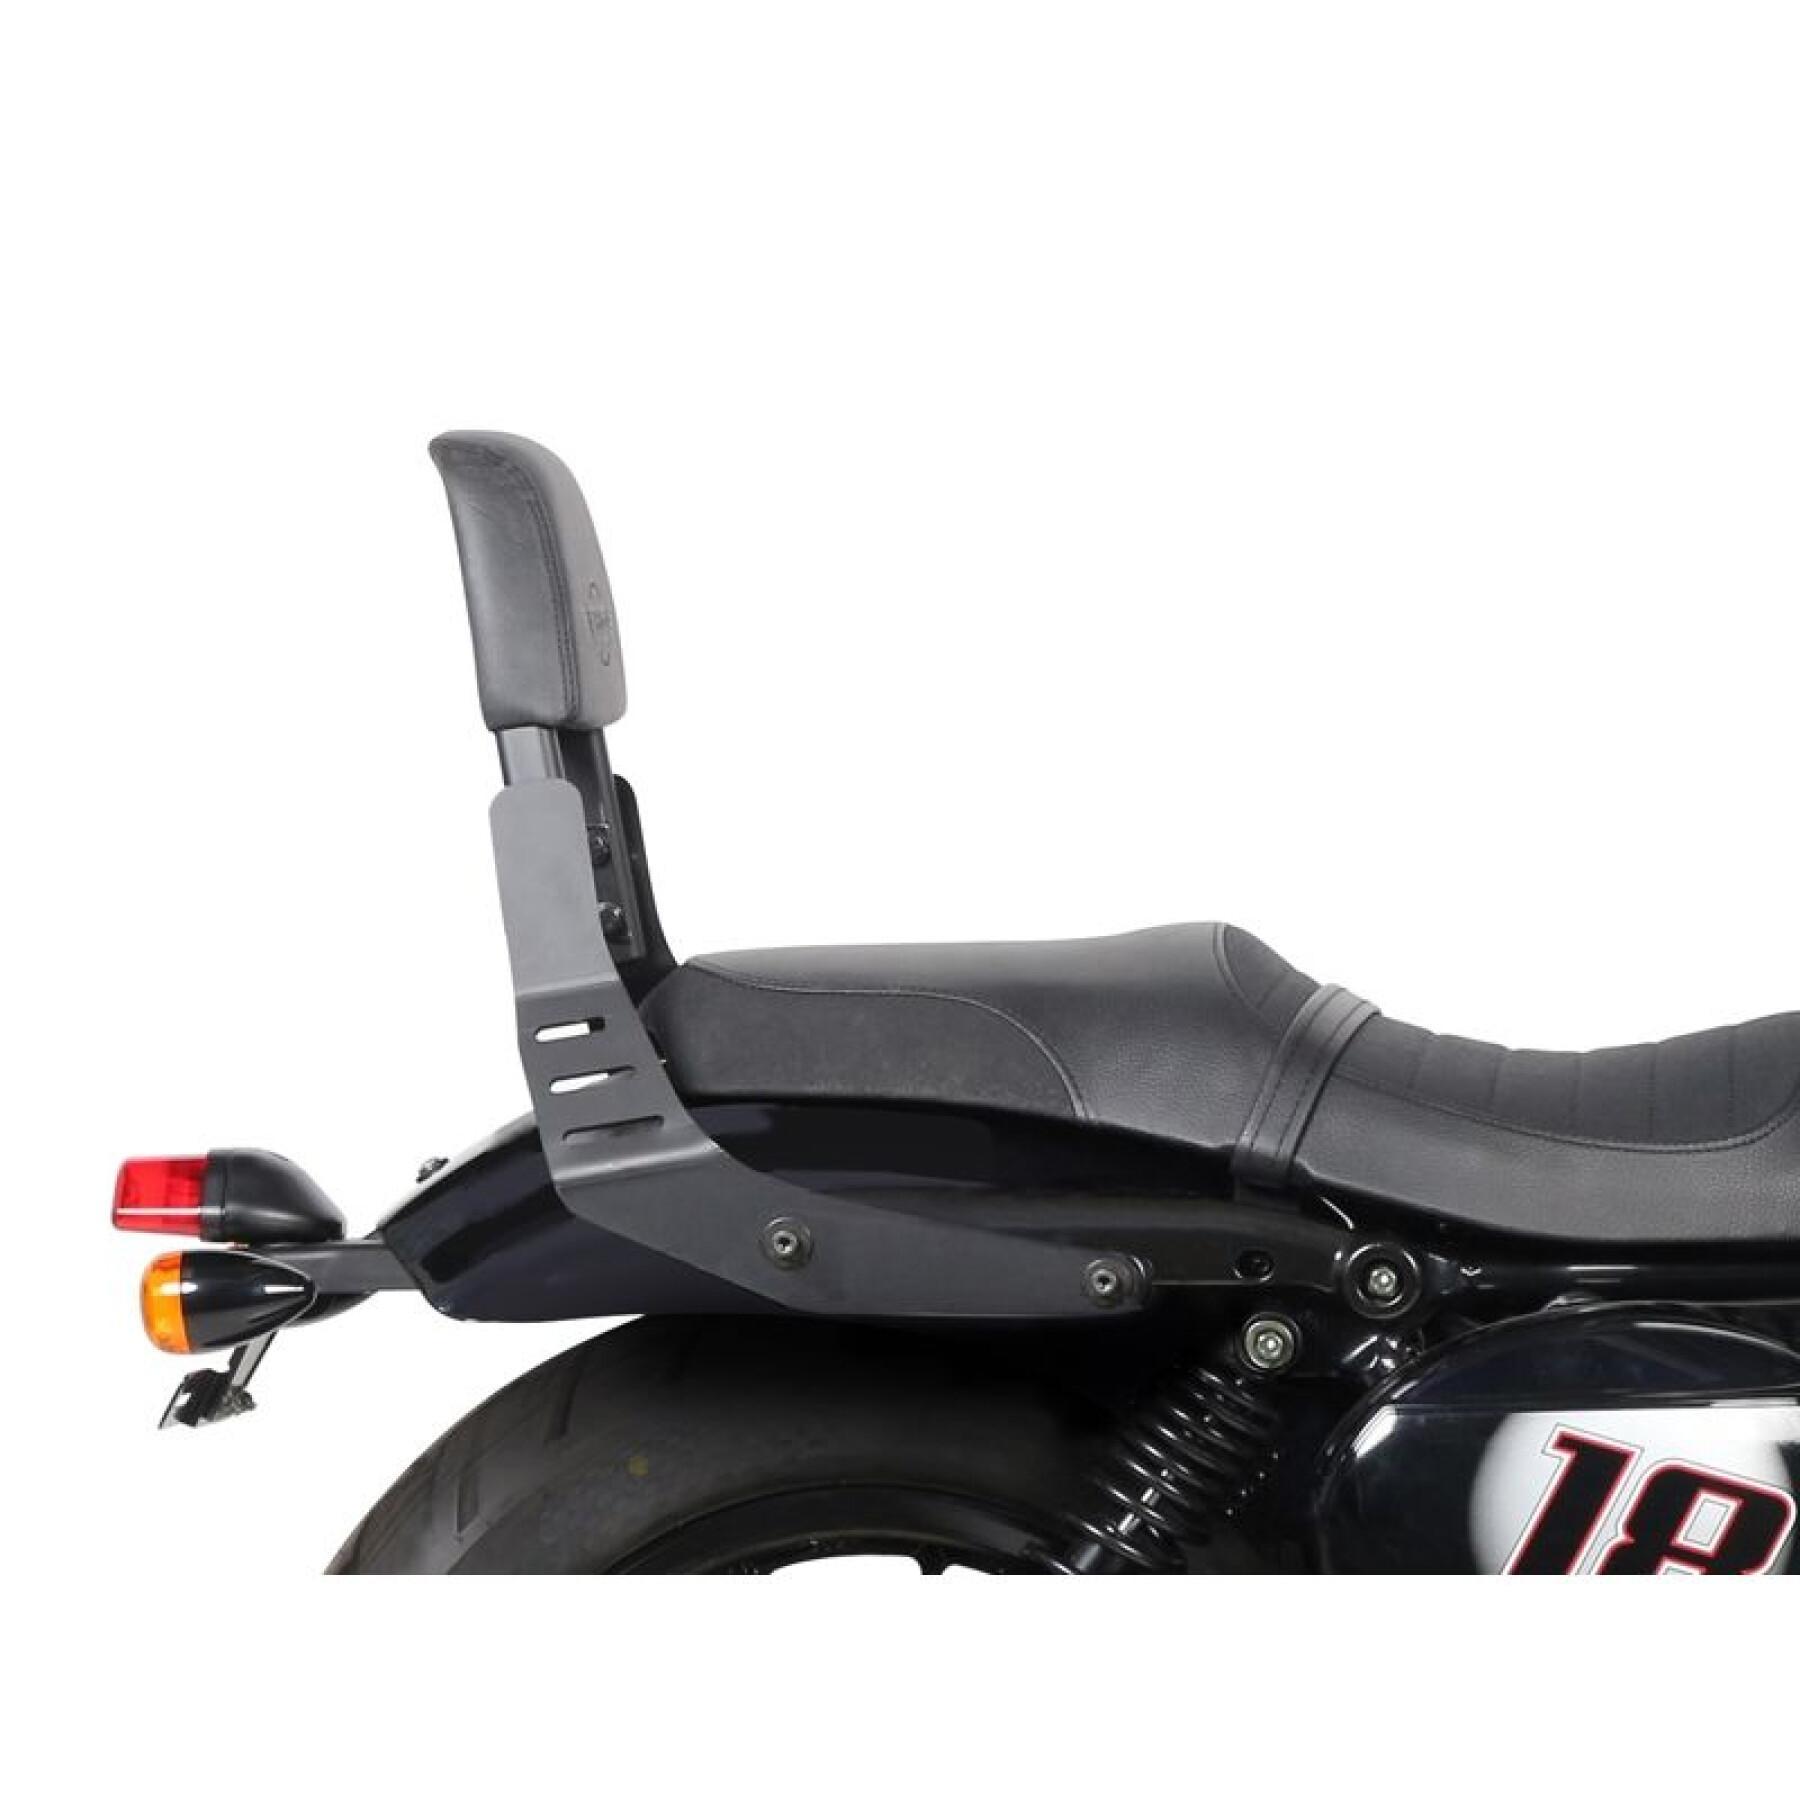 Suporte de caixa superior de motocicleta Shad Sissy Bar com suporte de caixa superior Shad Hyosung GV 125 Aquila (18 a 21)